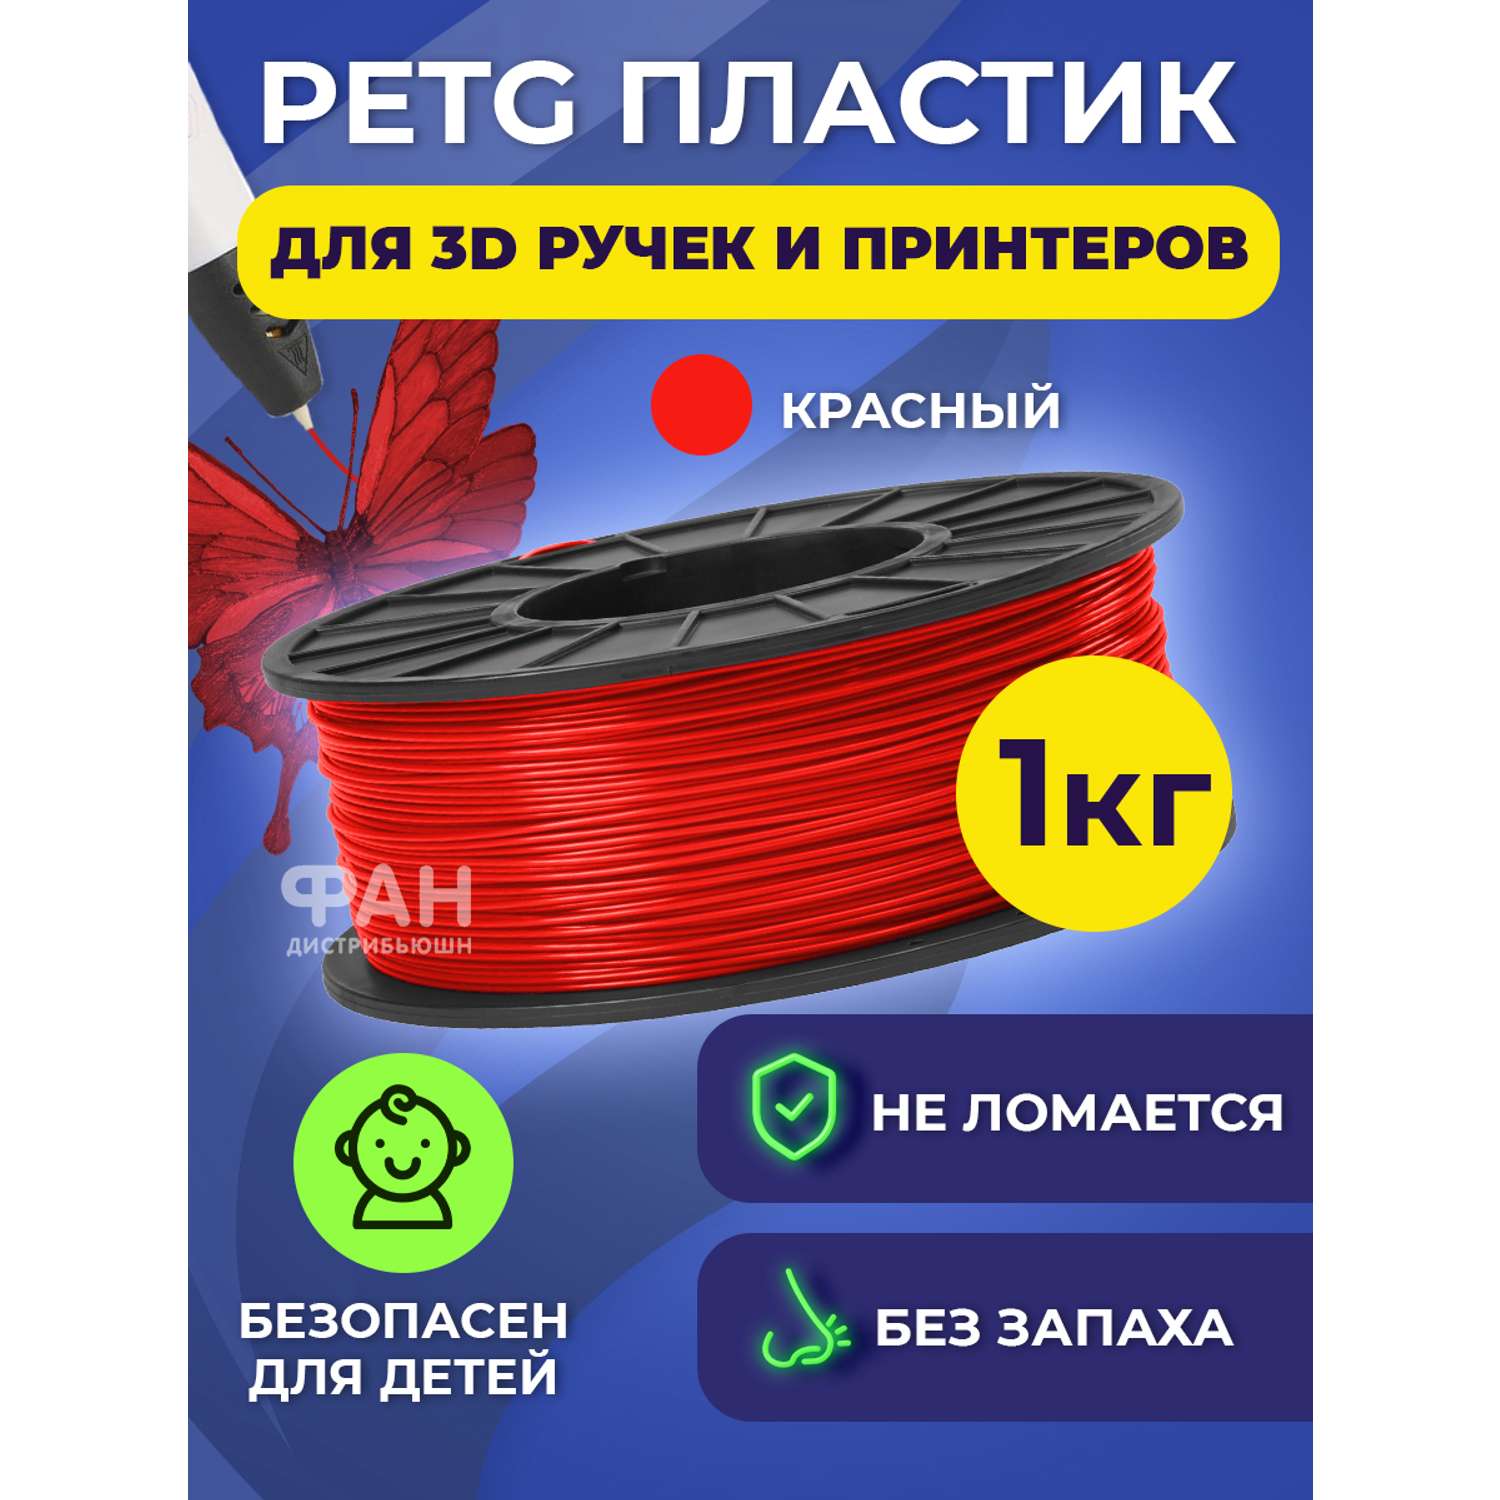 Пластик в катушке Funtasy PETG 1.75 мм 1 кг цвет красный - фото 2